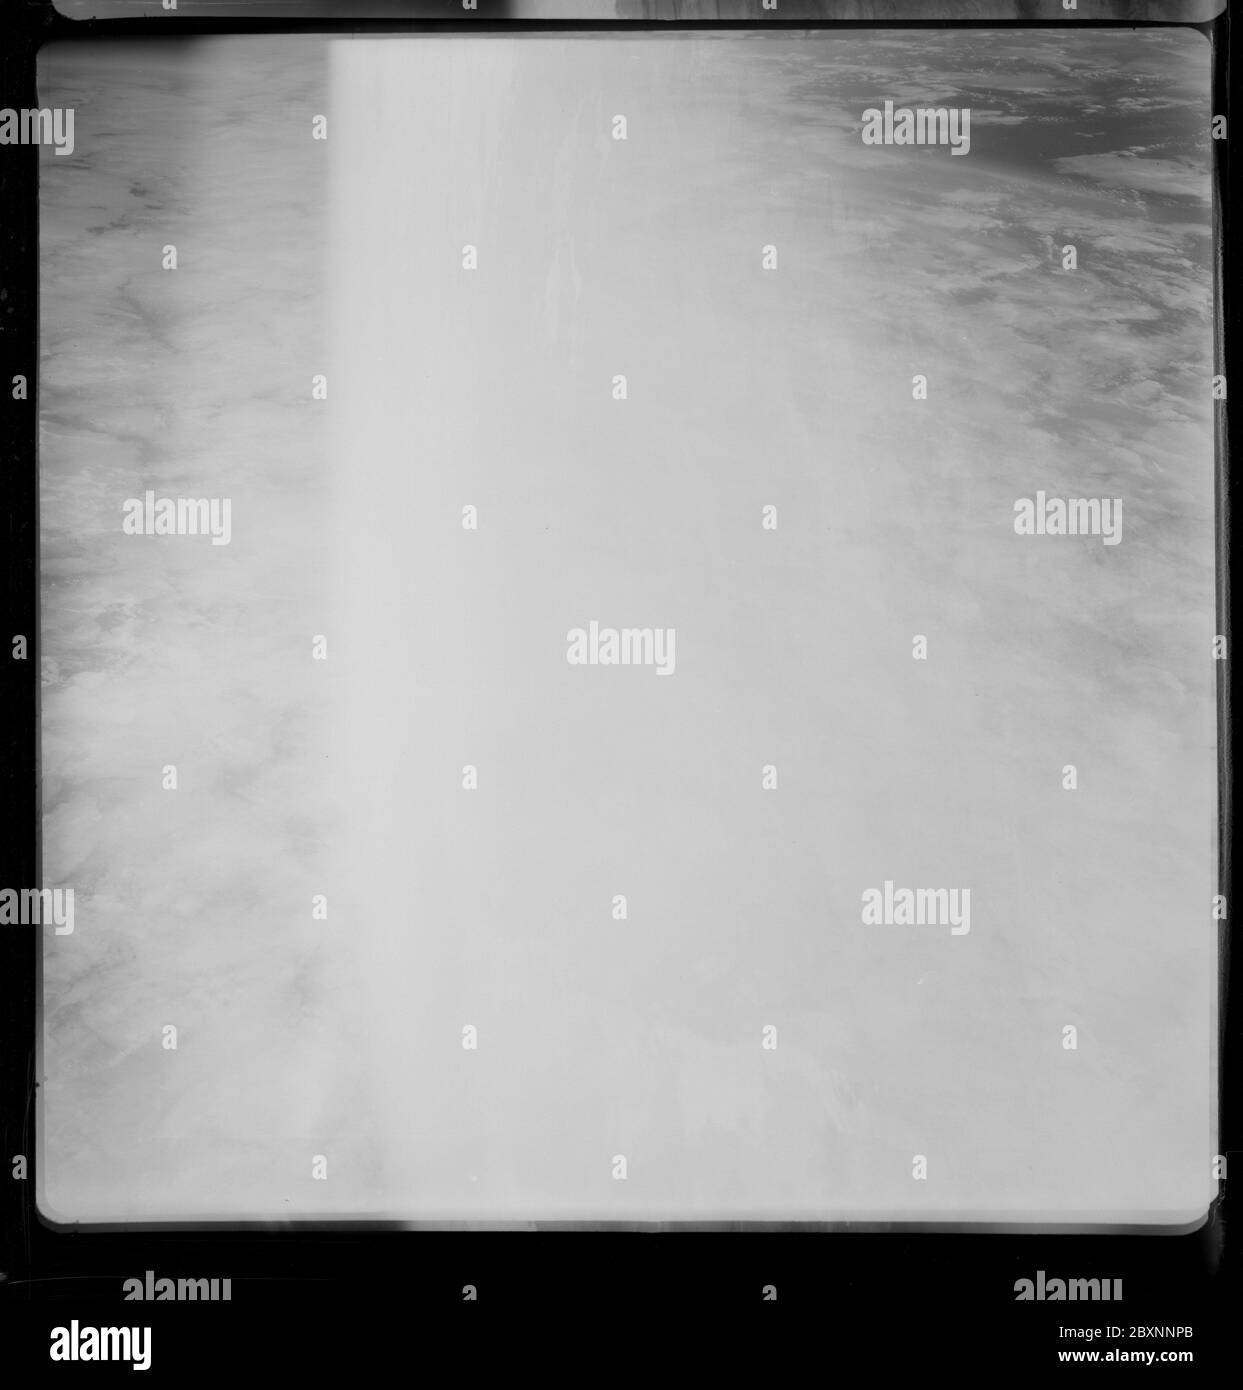 AS07-09-1948 - Apollo 7 - Apollo 7 Mission, überbelichtet Bild; Umfang und Inhalt: Die Originaldatenbank beschreibt dies als: Beschreibung: Apollo 7,überbelichtetes Bild. Originalfilmmagazin wurde mit V. bezeichnet.Kameradaten: Hasselblad 500-C; Objektiv: Zeiss Planar,F/2.8,80mm; Filmtyp: Kodak 3400,Aerial Panatomic - X; Filter: Unbekannt. Flugdatum: 11.-12. Oktober. 1968. Themengebiet: Apollo 7 Flug Kategorien: Leer Original: Film - 35MM BW Interior Exterior: Exterior Ground Orbit: On-Orbit; 1967 – 1972; Stockfoto